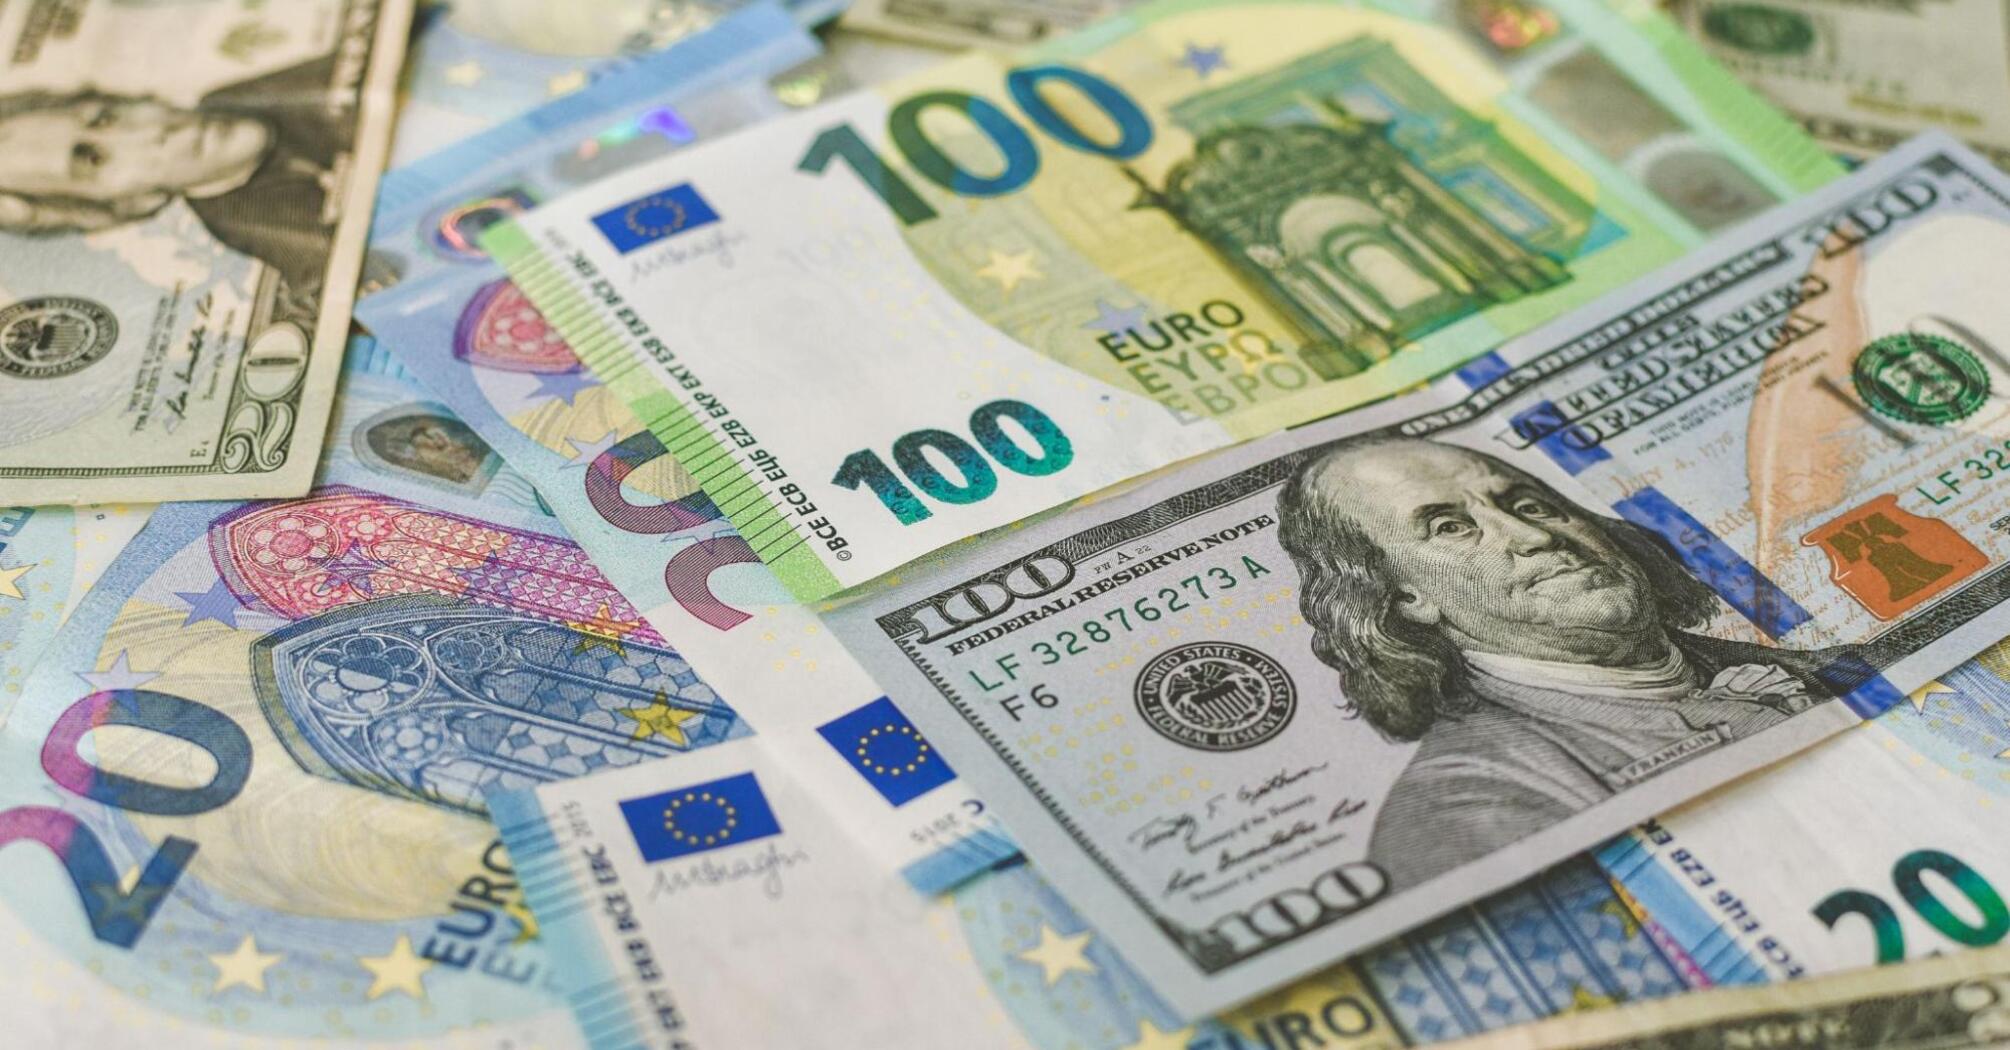 Euro and US dollar banknotes